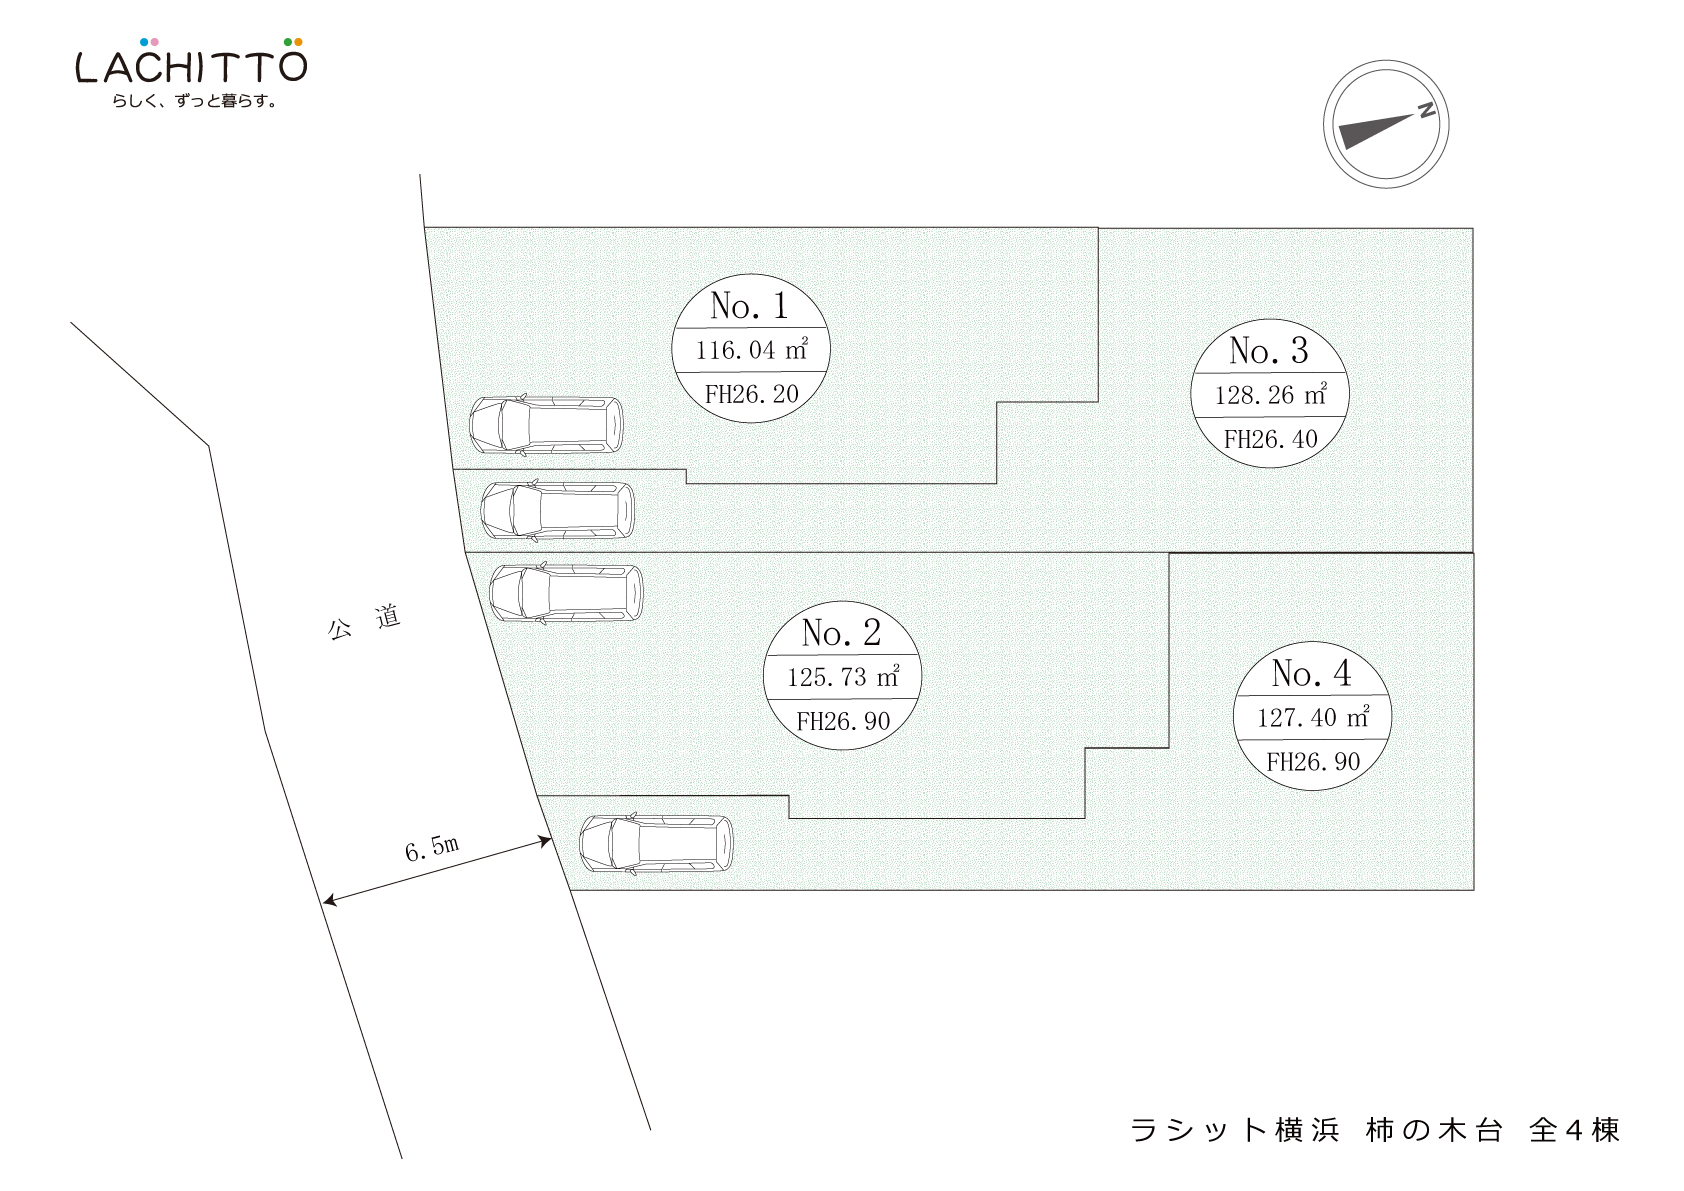 新築 戸建住宅 ラシット横浜 柿の木 全4棟 全体区画図 横浜建物